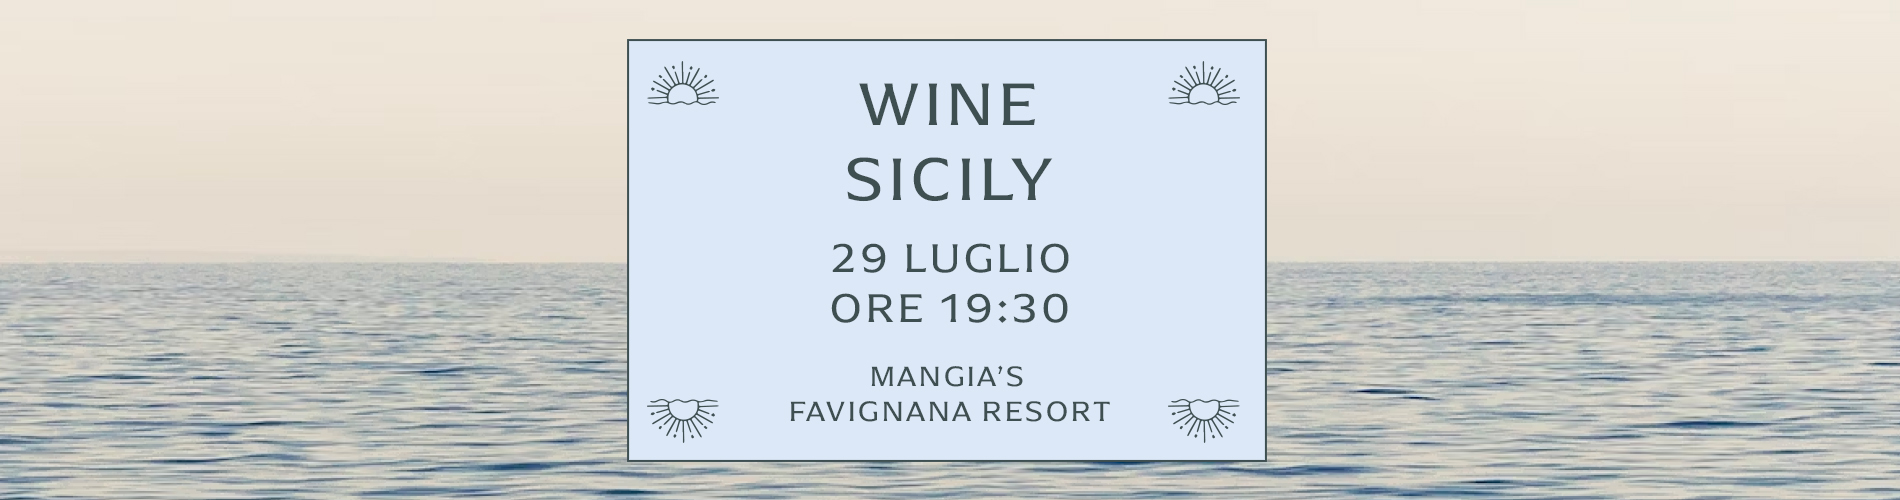 Wine Sicily Favignana